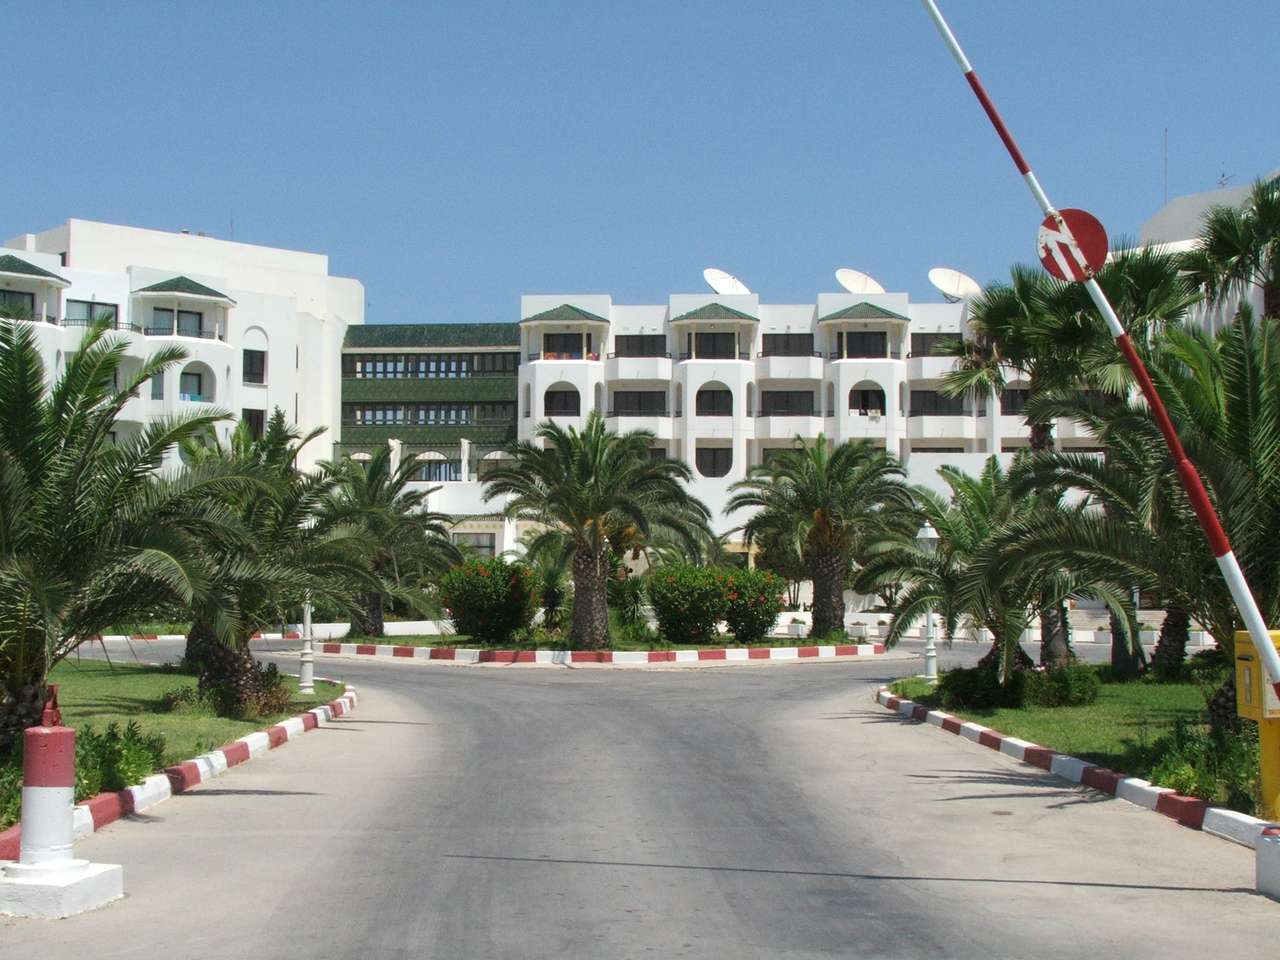 Hotel in Tunisia puzzle online